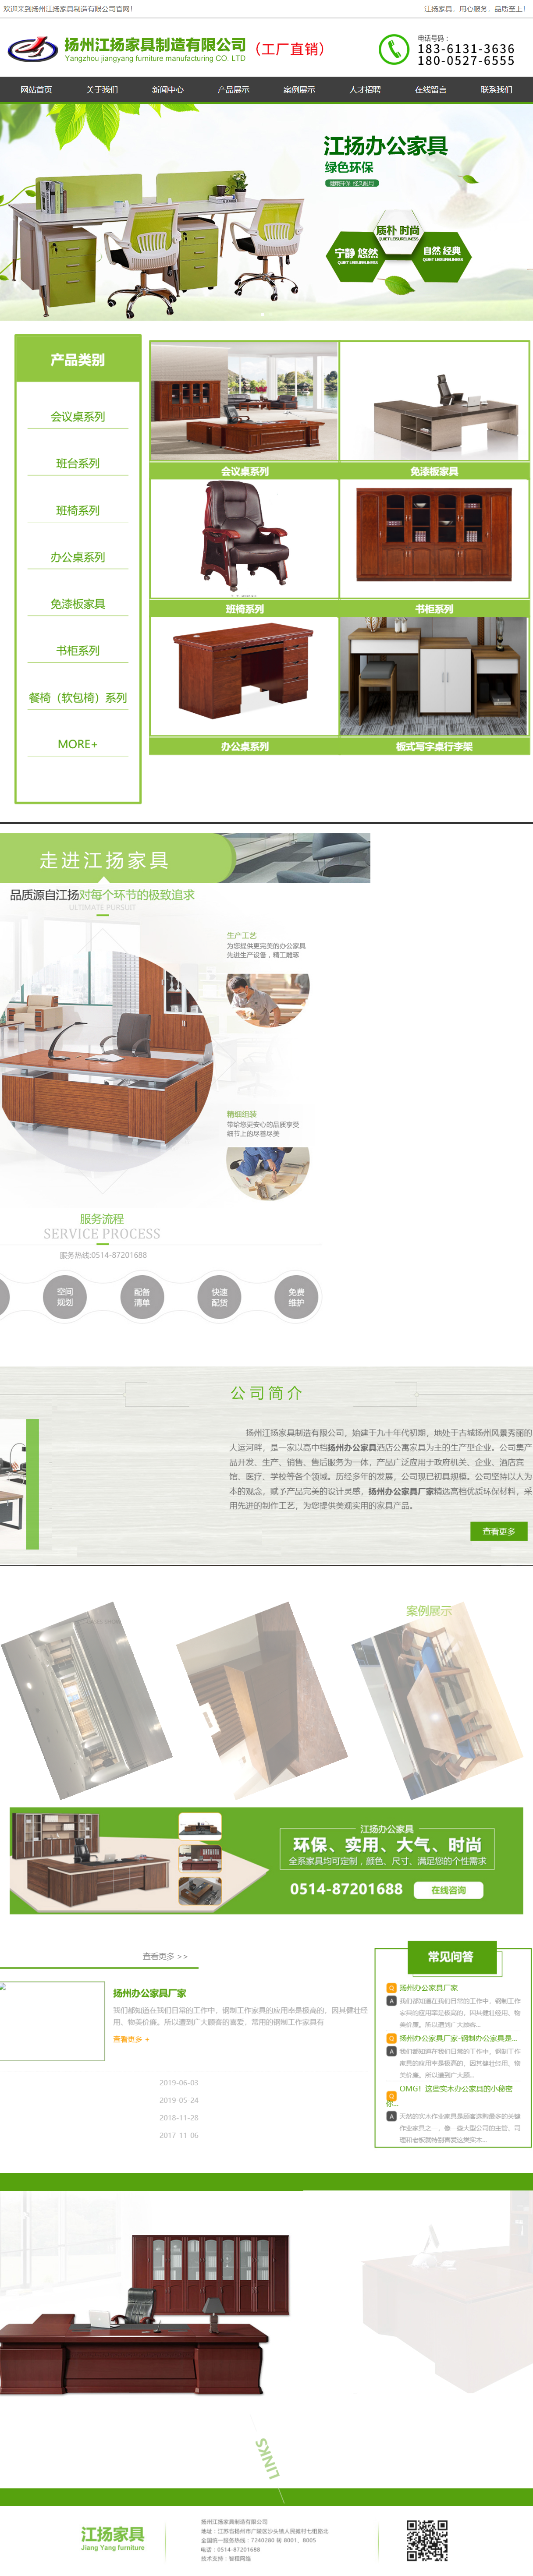 扬州江扬家具制造有限公司网站案例